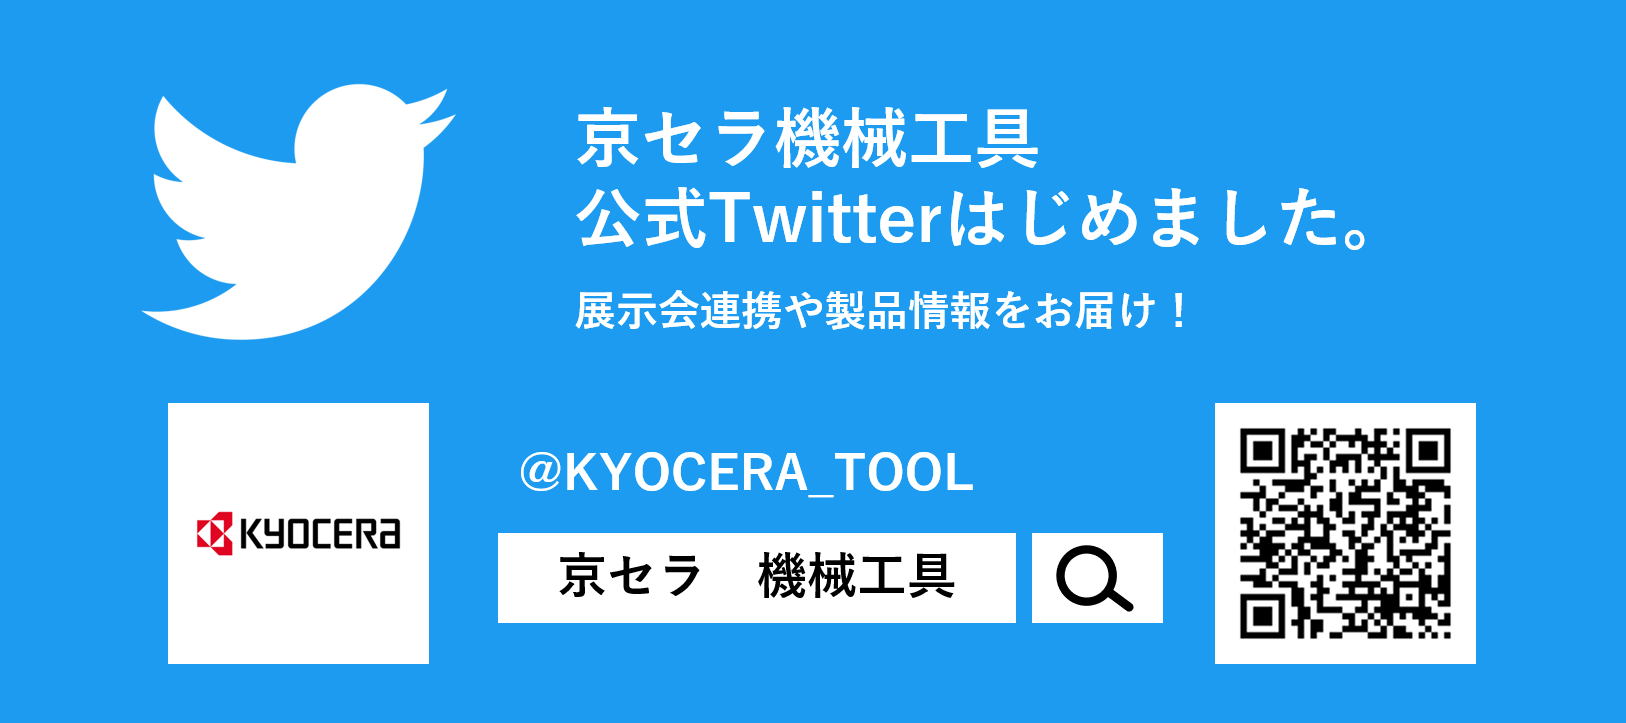 Twitter_news